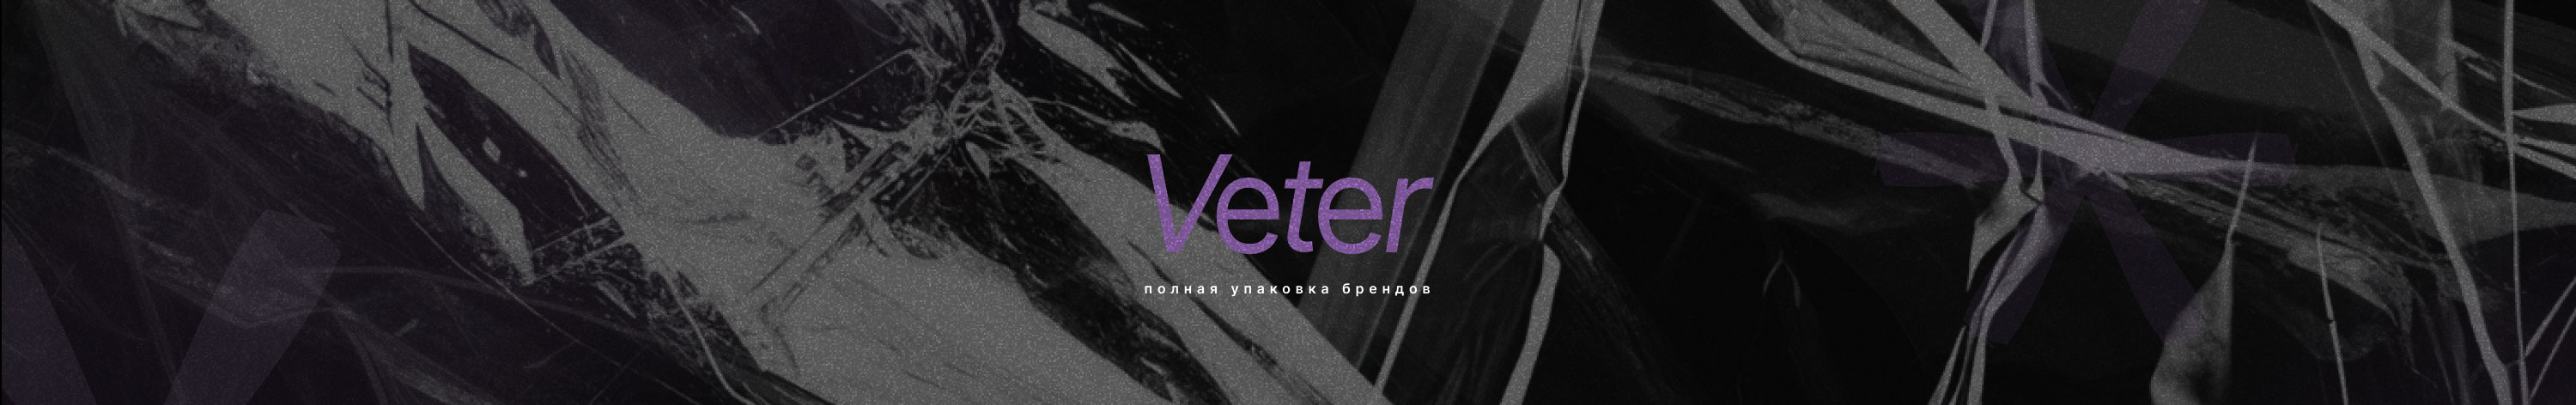 Oly Veter's profile banner